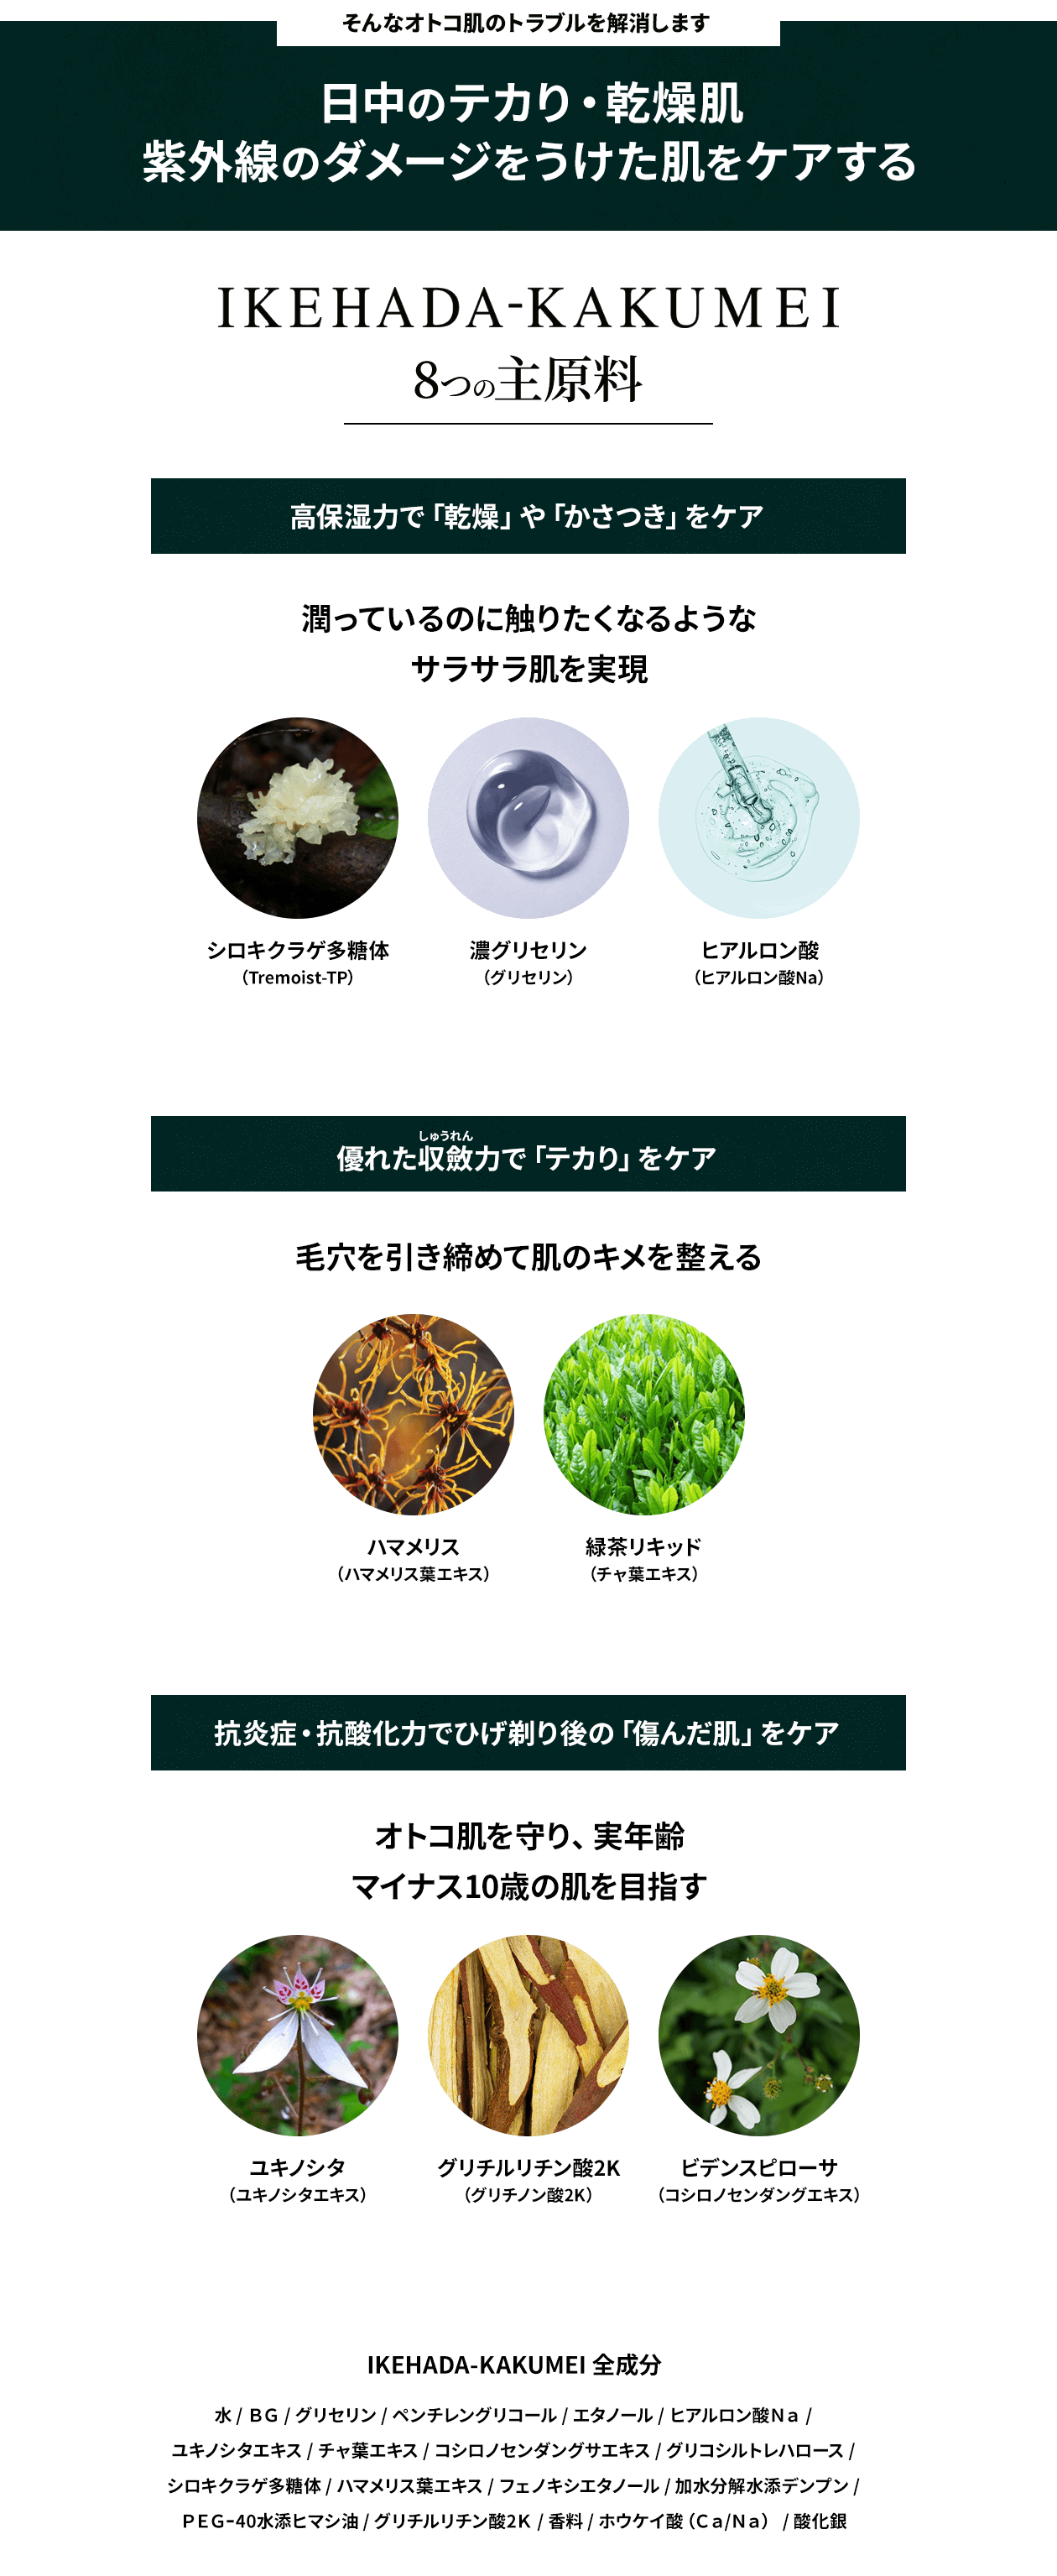 IKEHADA-KAKUMEI 8つの主原料